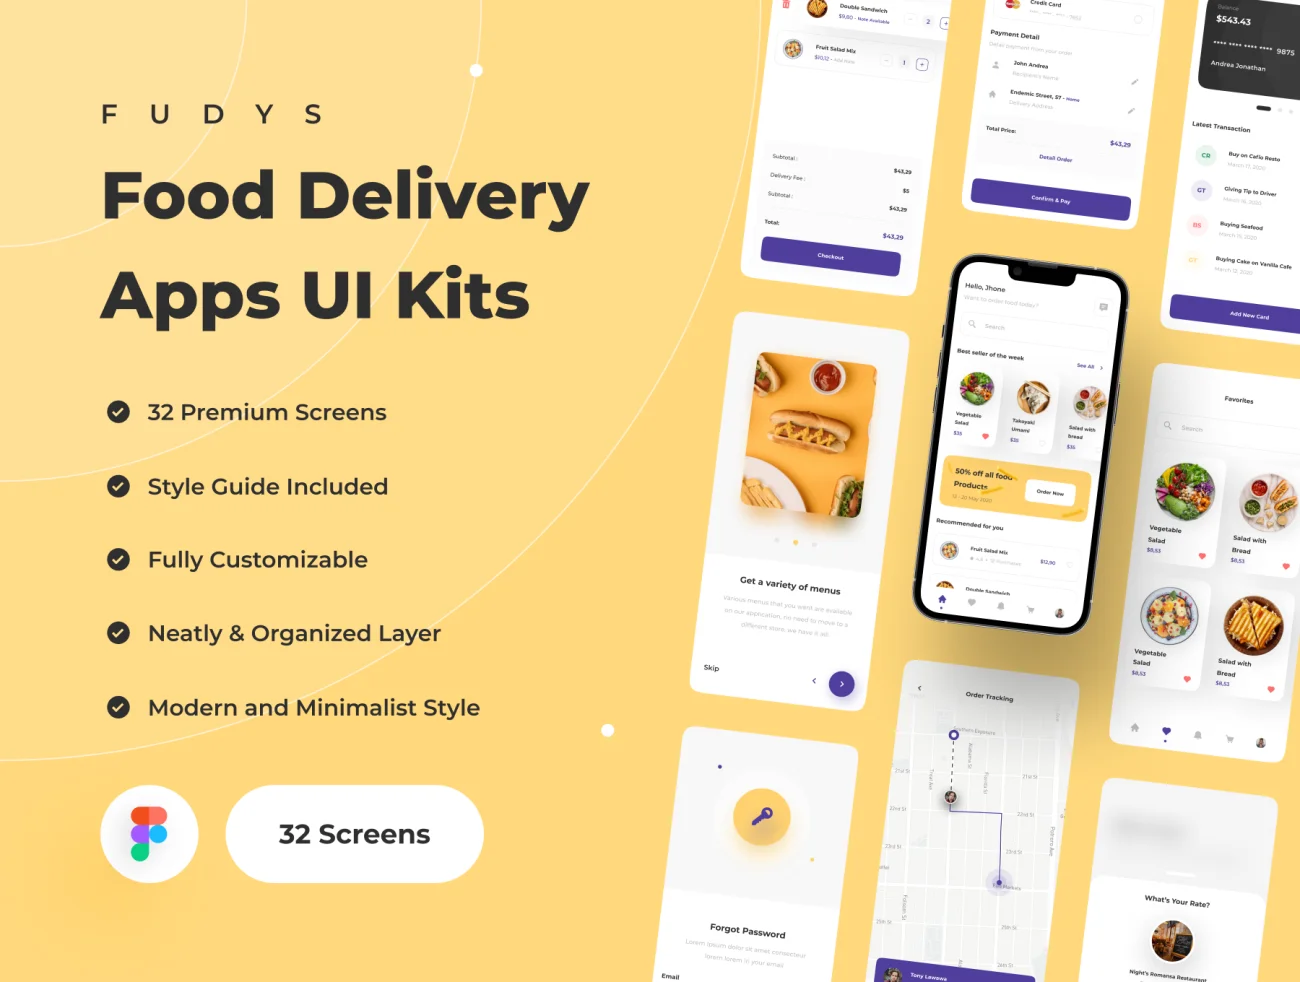 32屏外卖点餐配送应用UI设计套件 Fudys - Food Delivery Apps UI Kit .figma-UI/UX、ui套件、主页、应用、支付、网站、网购、详情、预订-到位啦UI